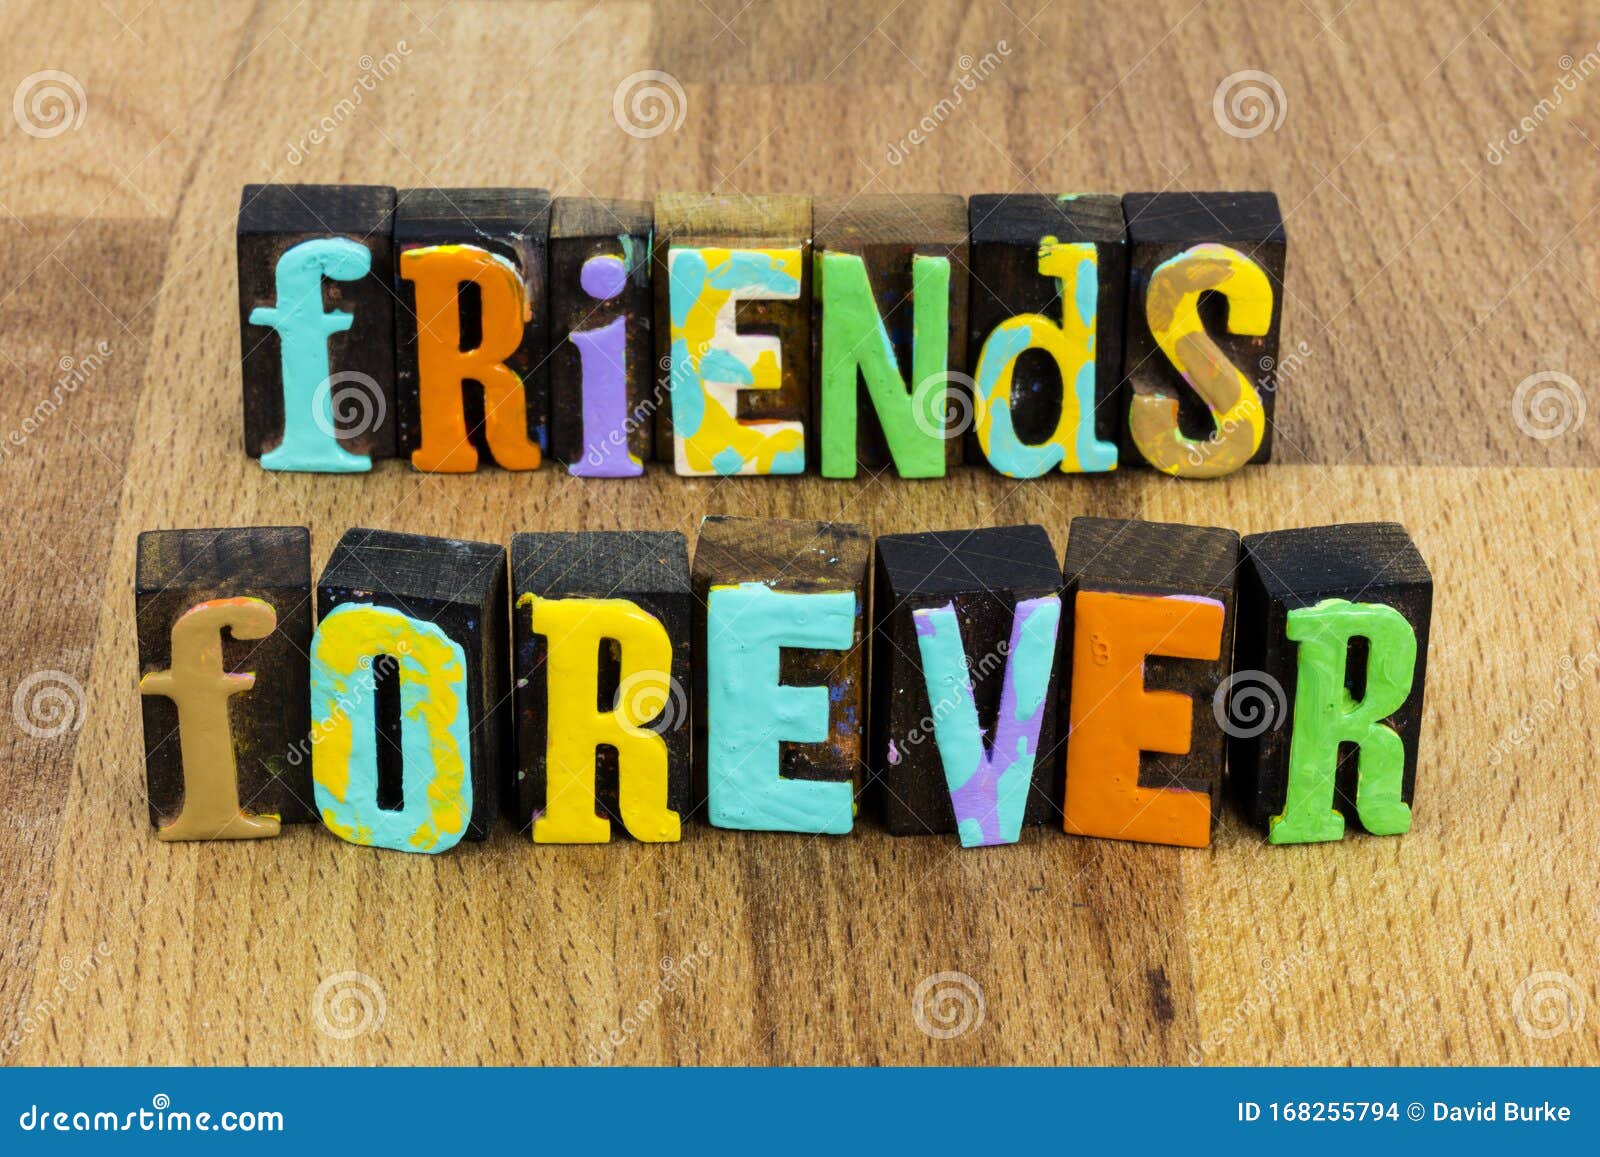 Amigos para Sempre imagem #681 - Amizade para sempre - As melhores